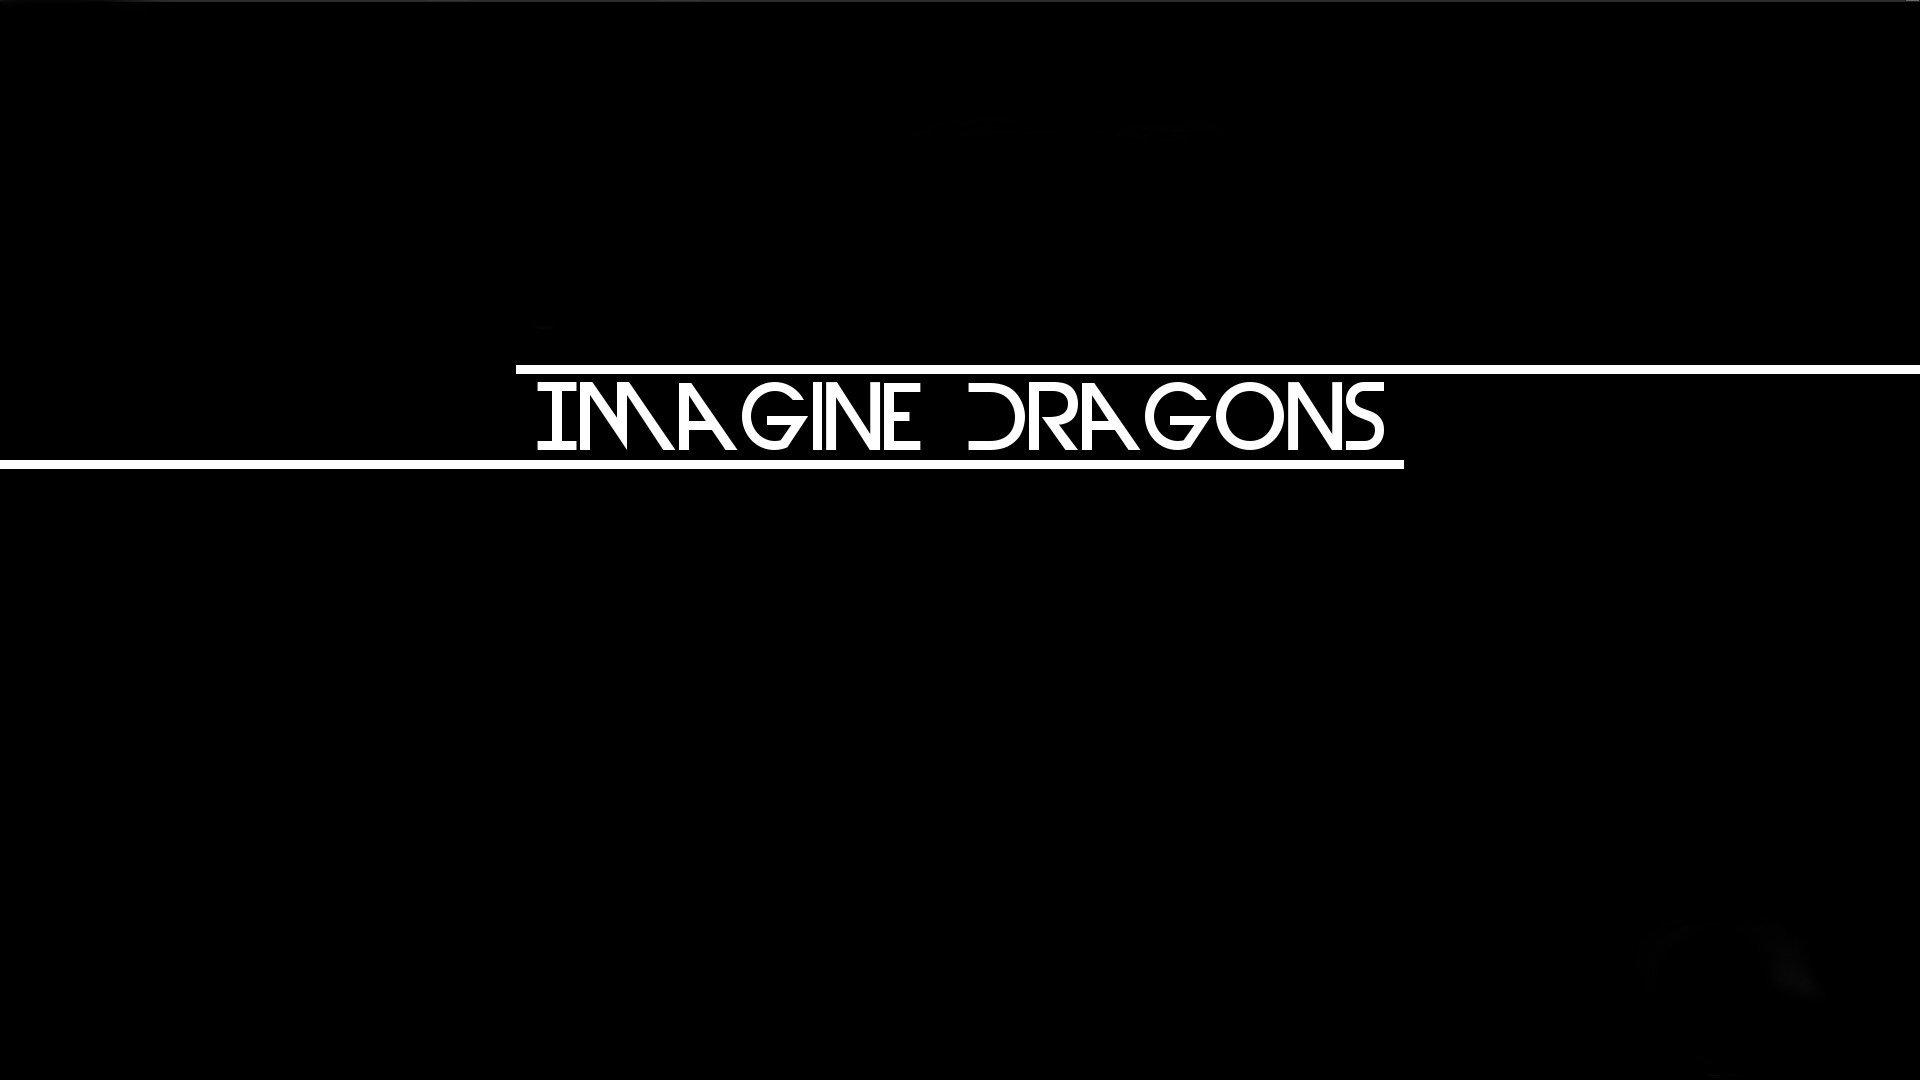 Imagine Dragons Origins Wallpapers Wallpaper Cave